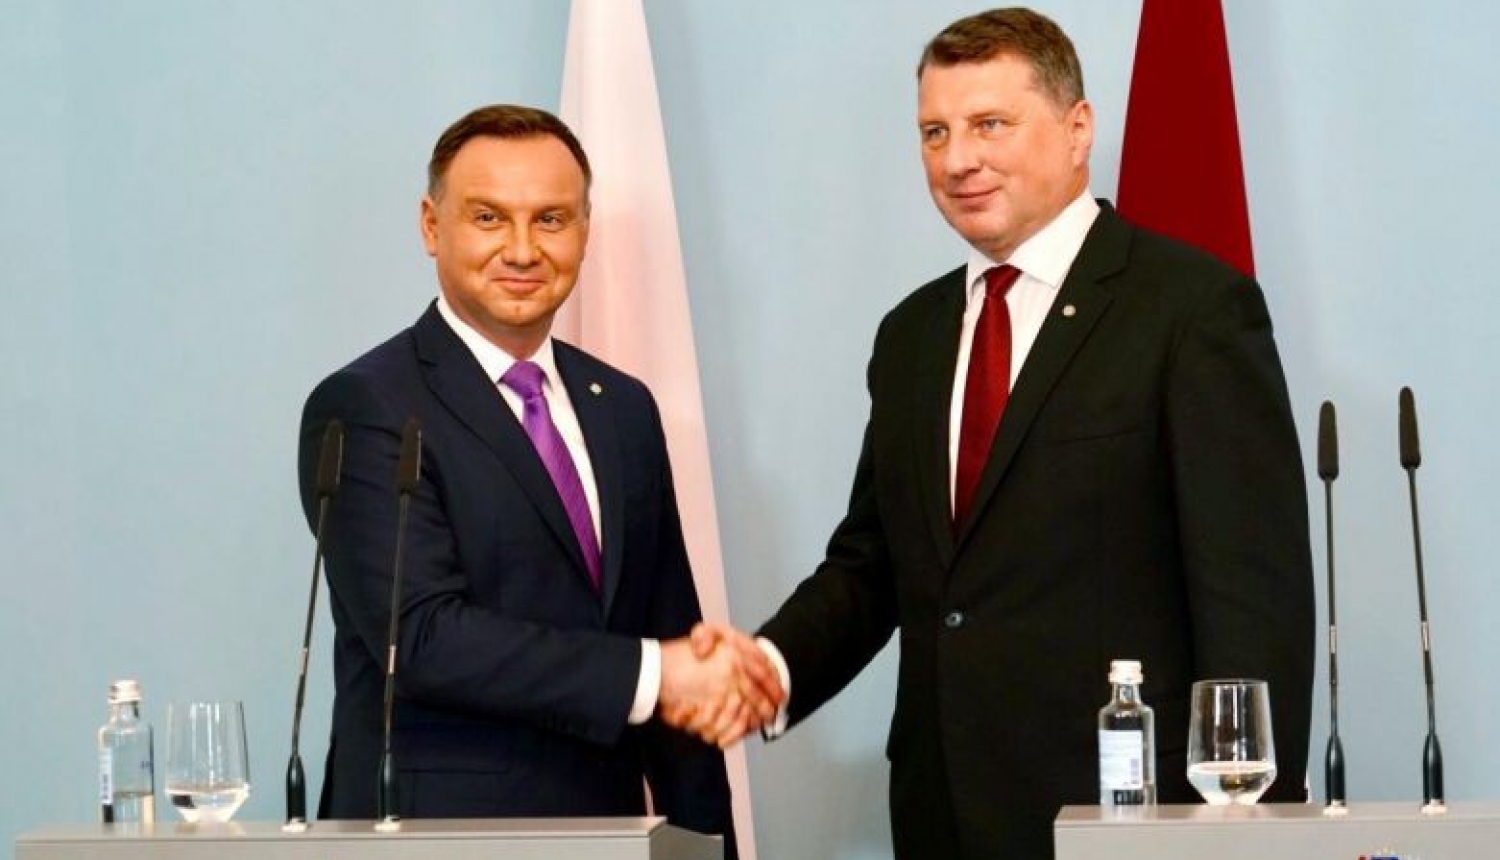 Valsts prezidenta Raimonda Vējoņa paziņojums presei  pēc tikšanās ar Polijas prezidentu Andžeju Dudu